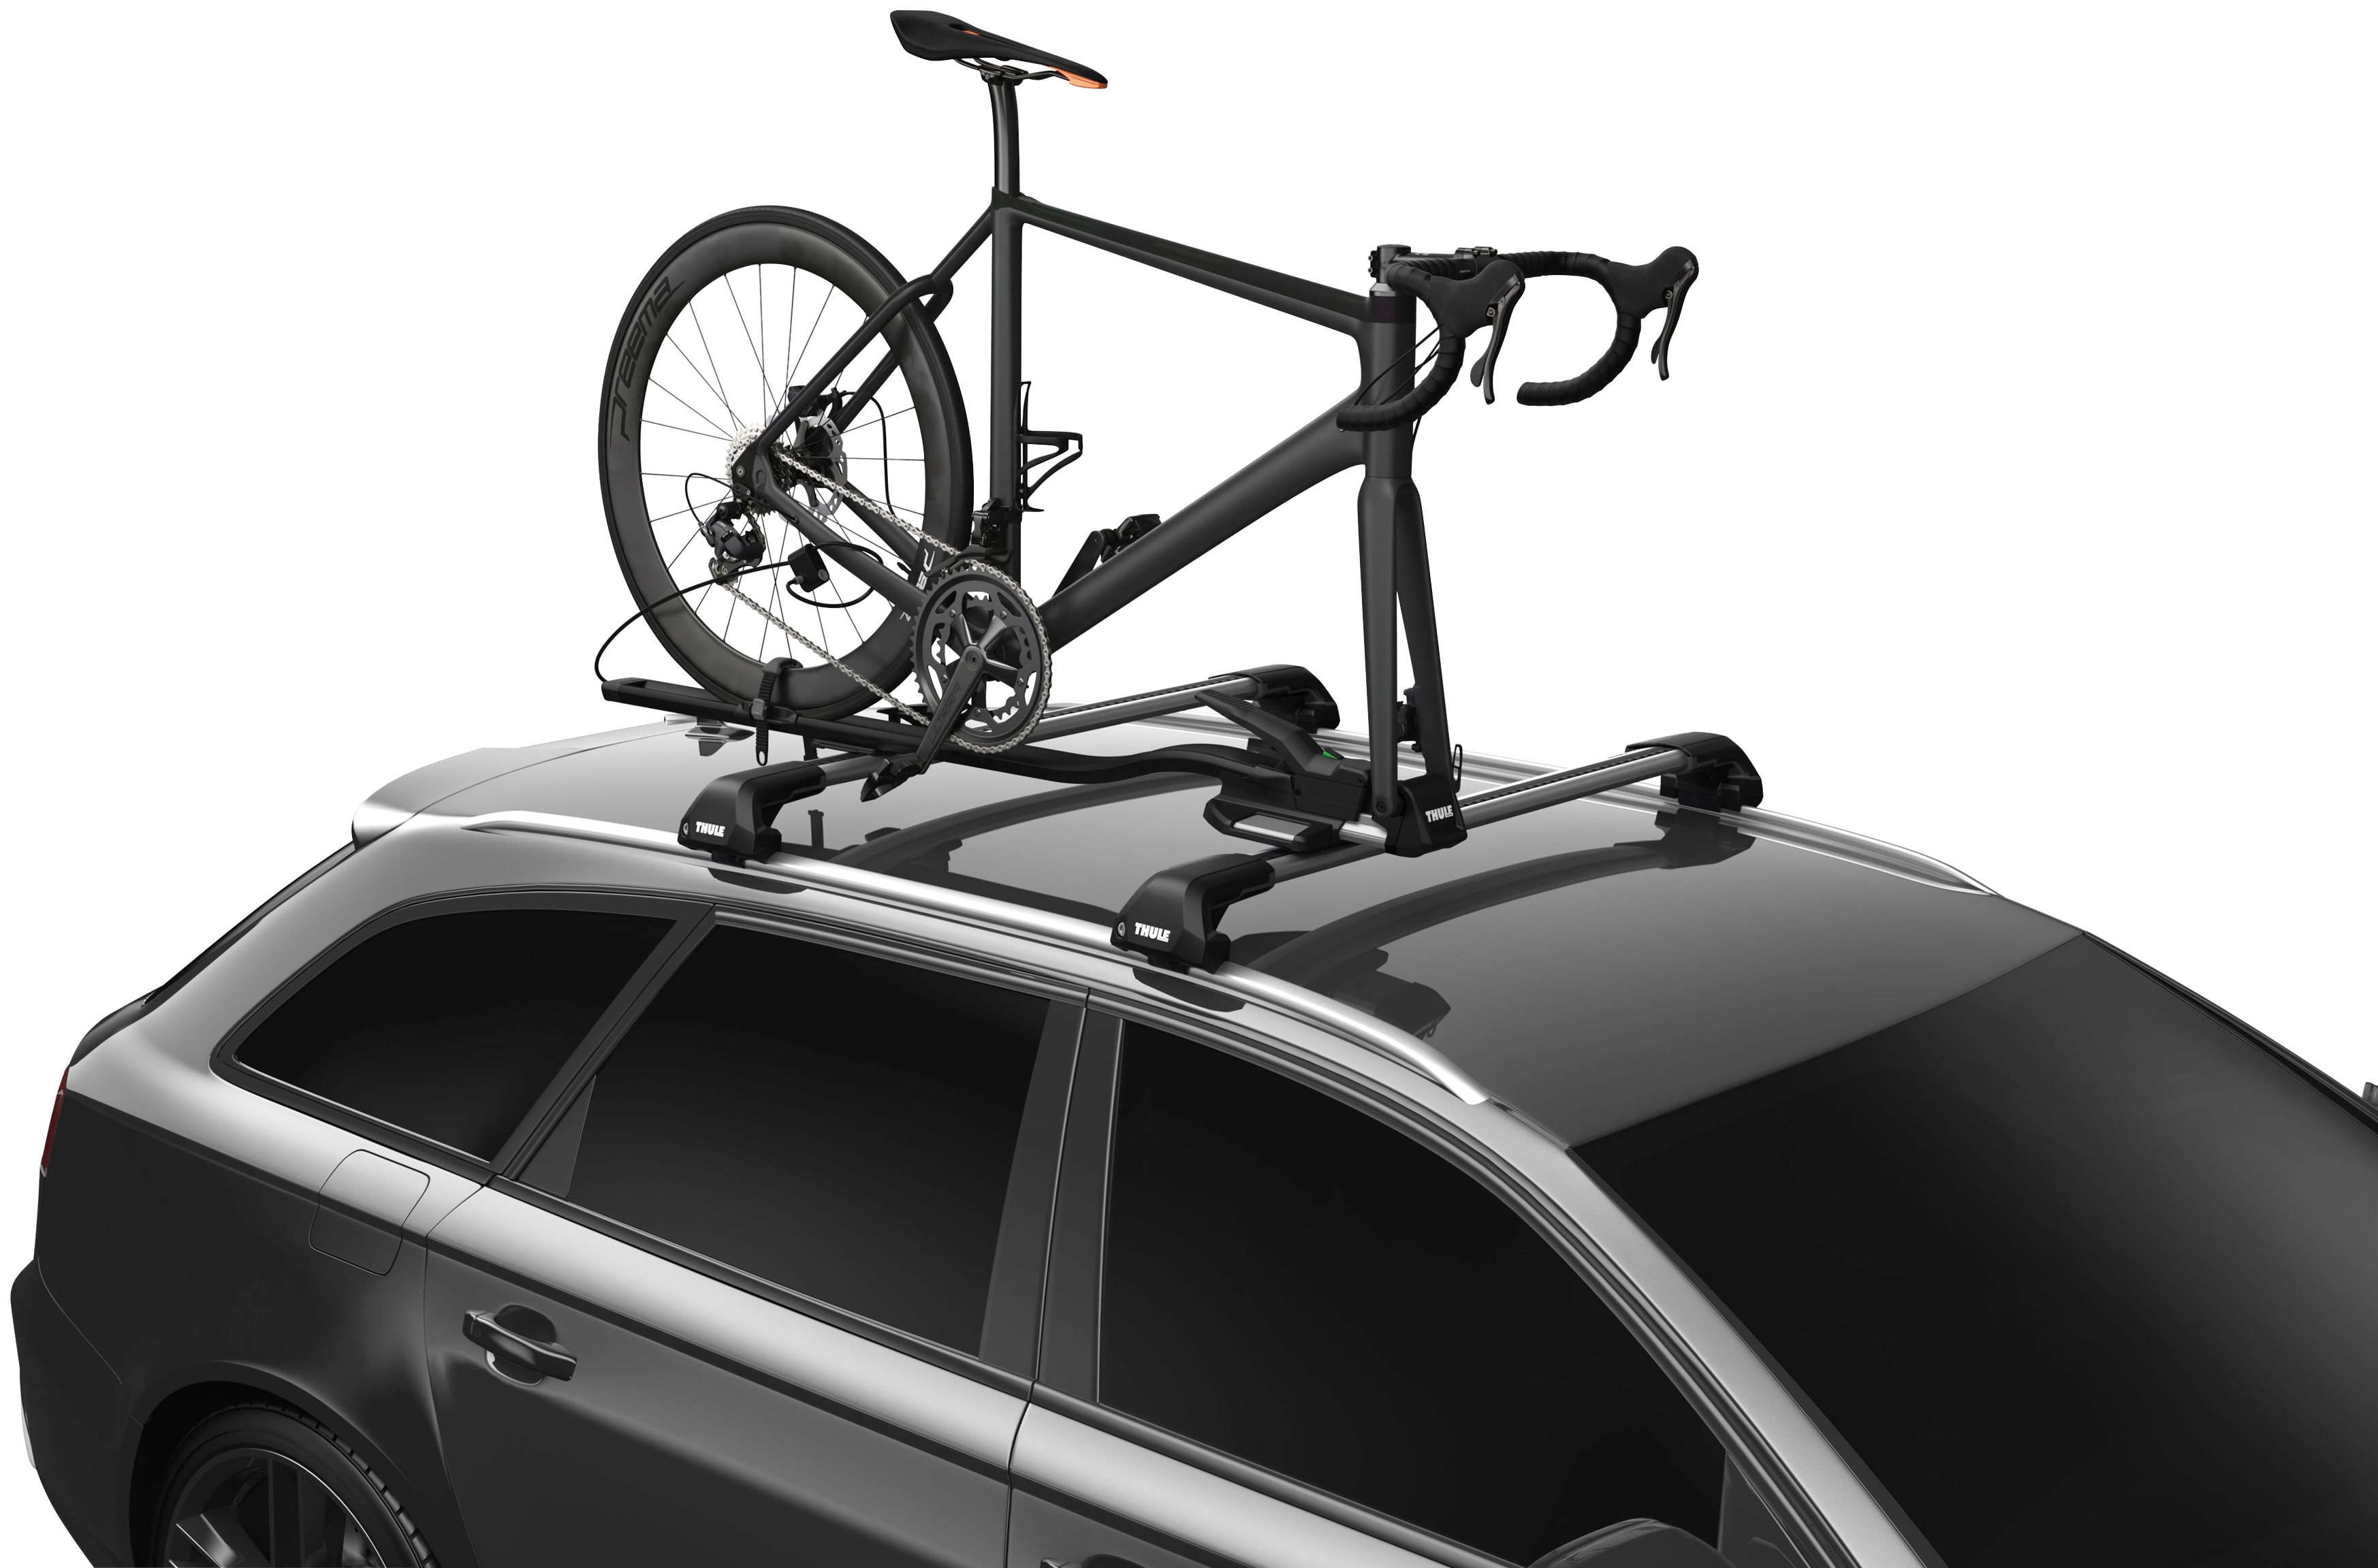 Thule Dachfahrradträger TopRide, für den Transport von 1 Fahrrad schwarz Fahrradträger Autozubehör Reifen